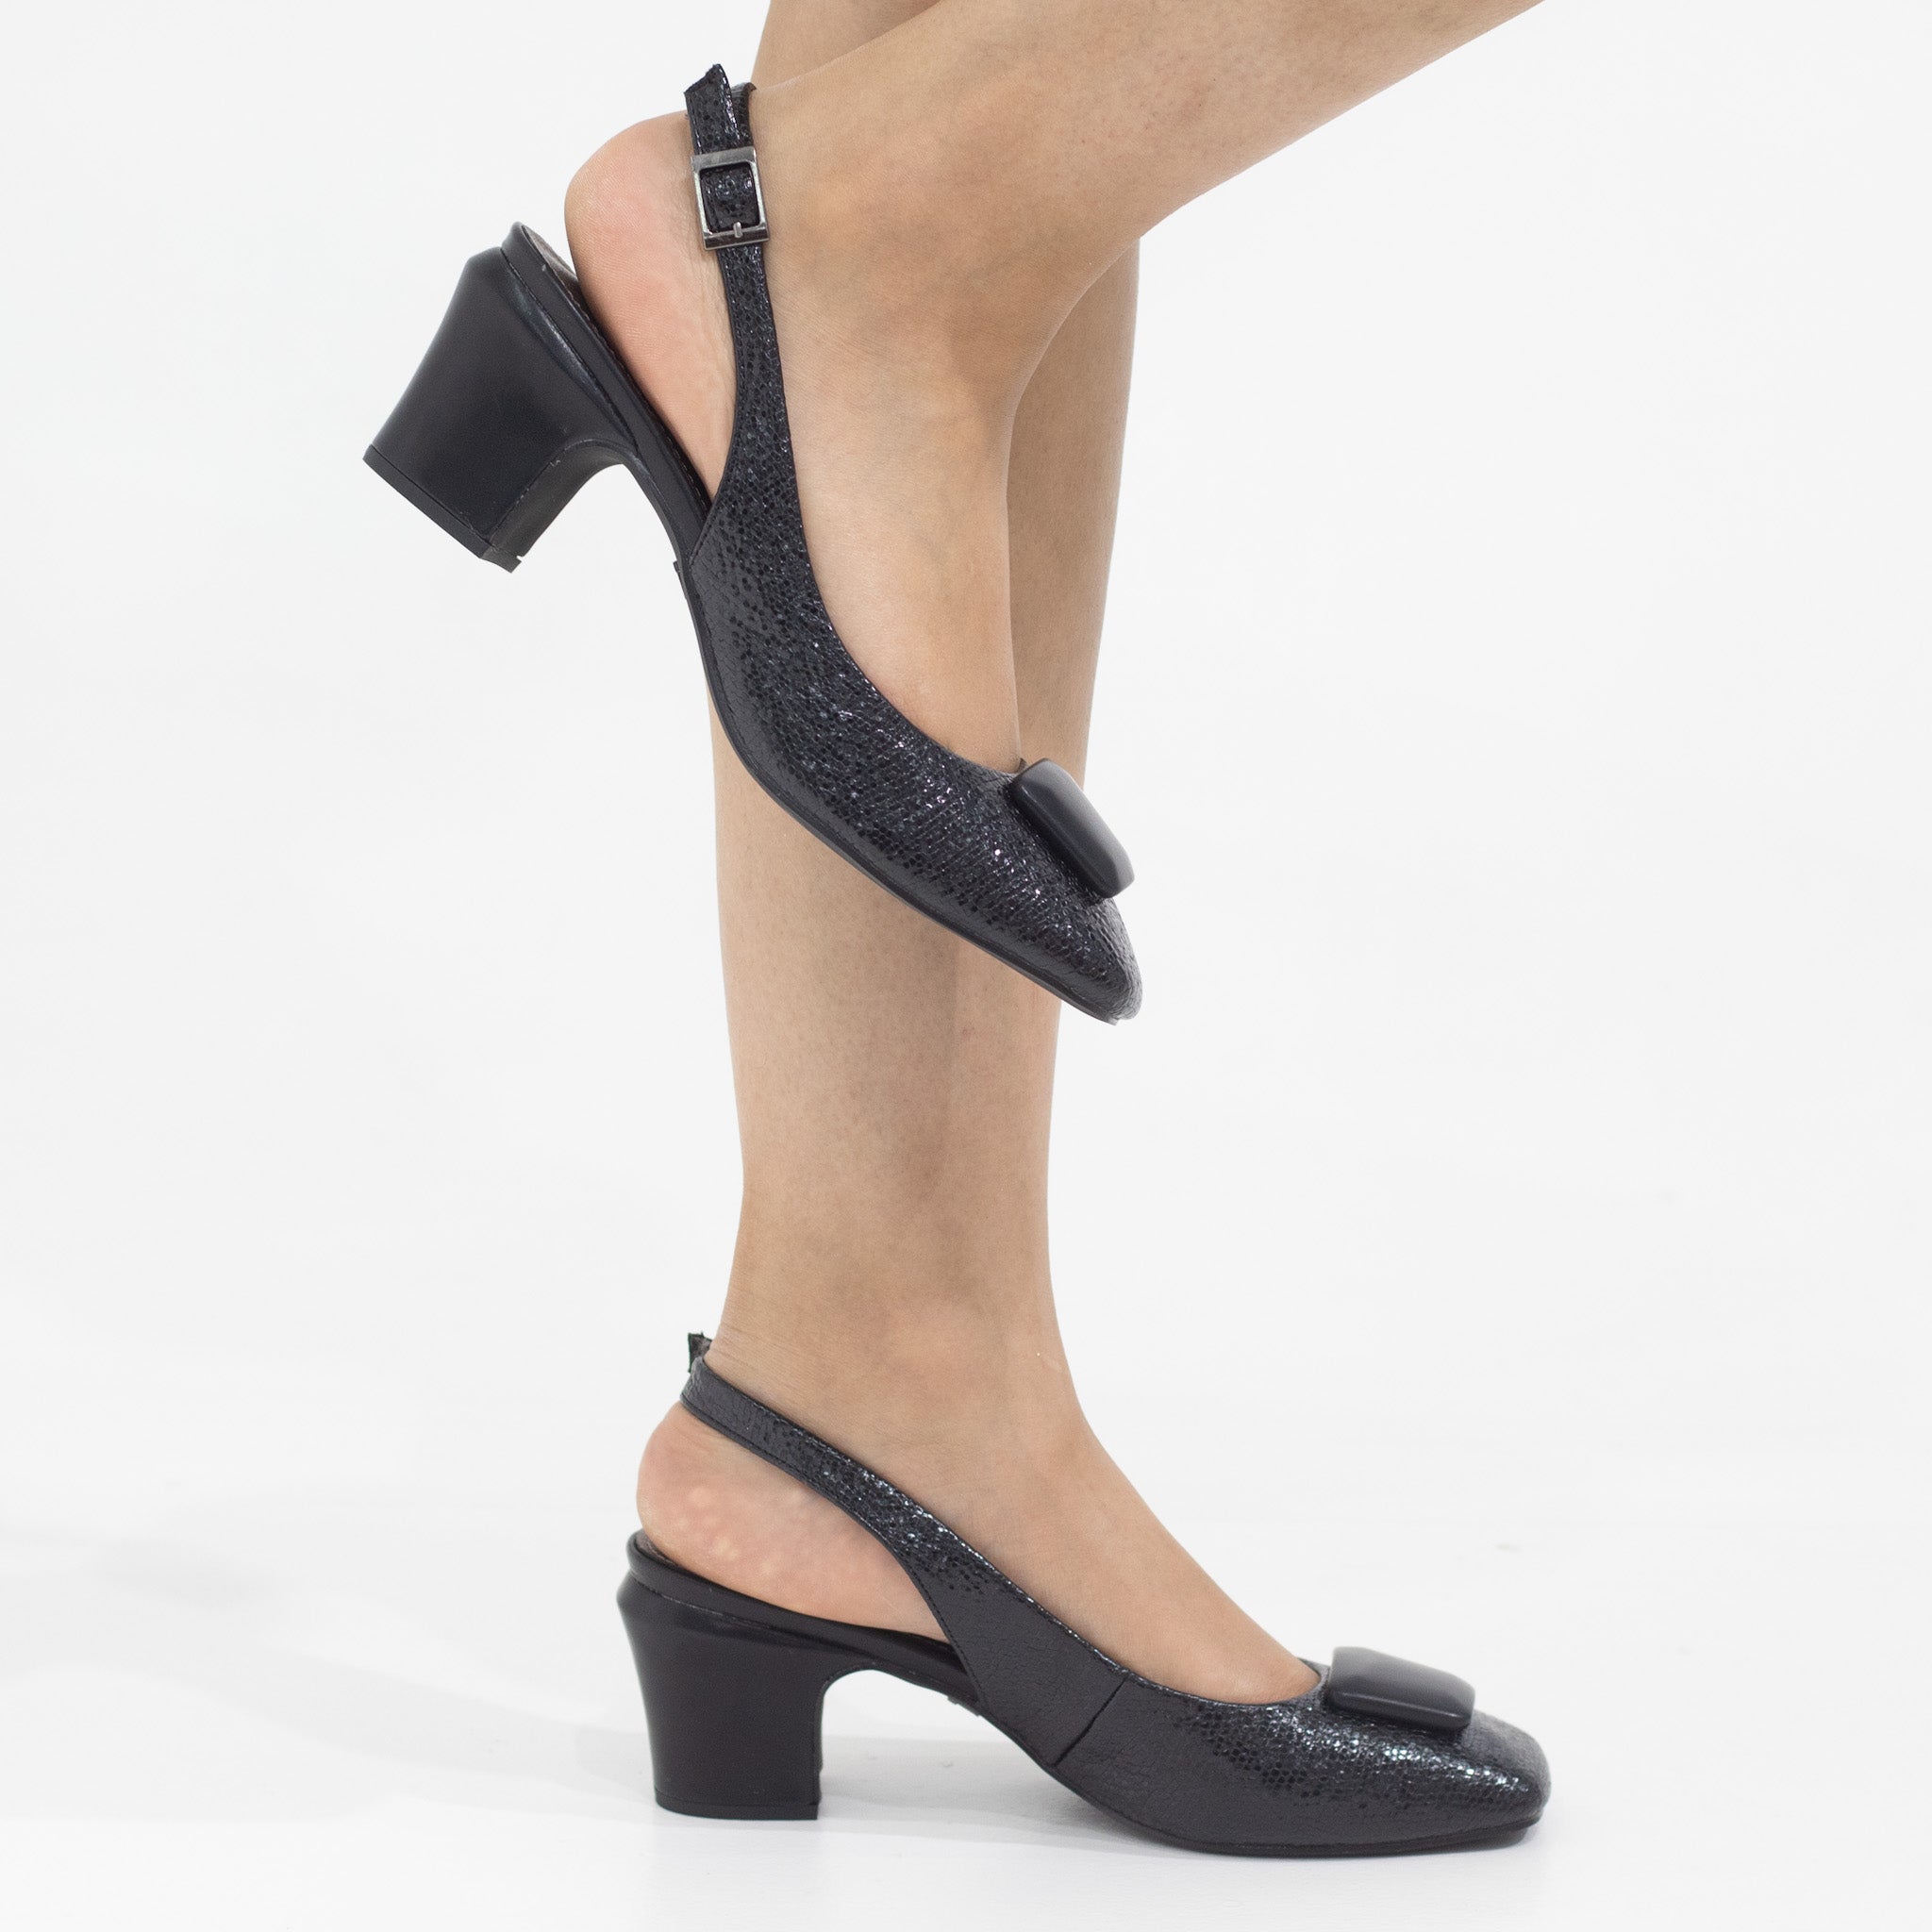 Blaze block 5.5cm heel sling back with sqr trim pumps black